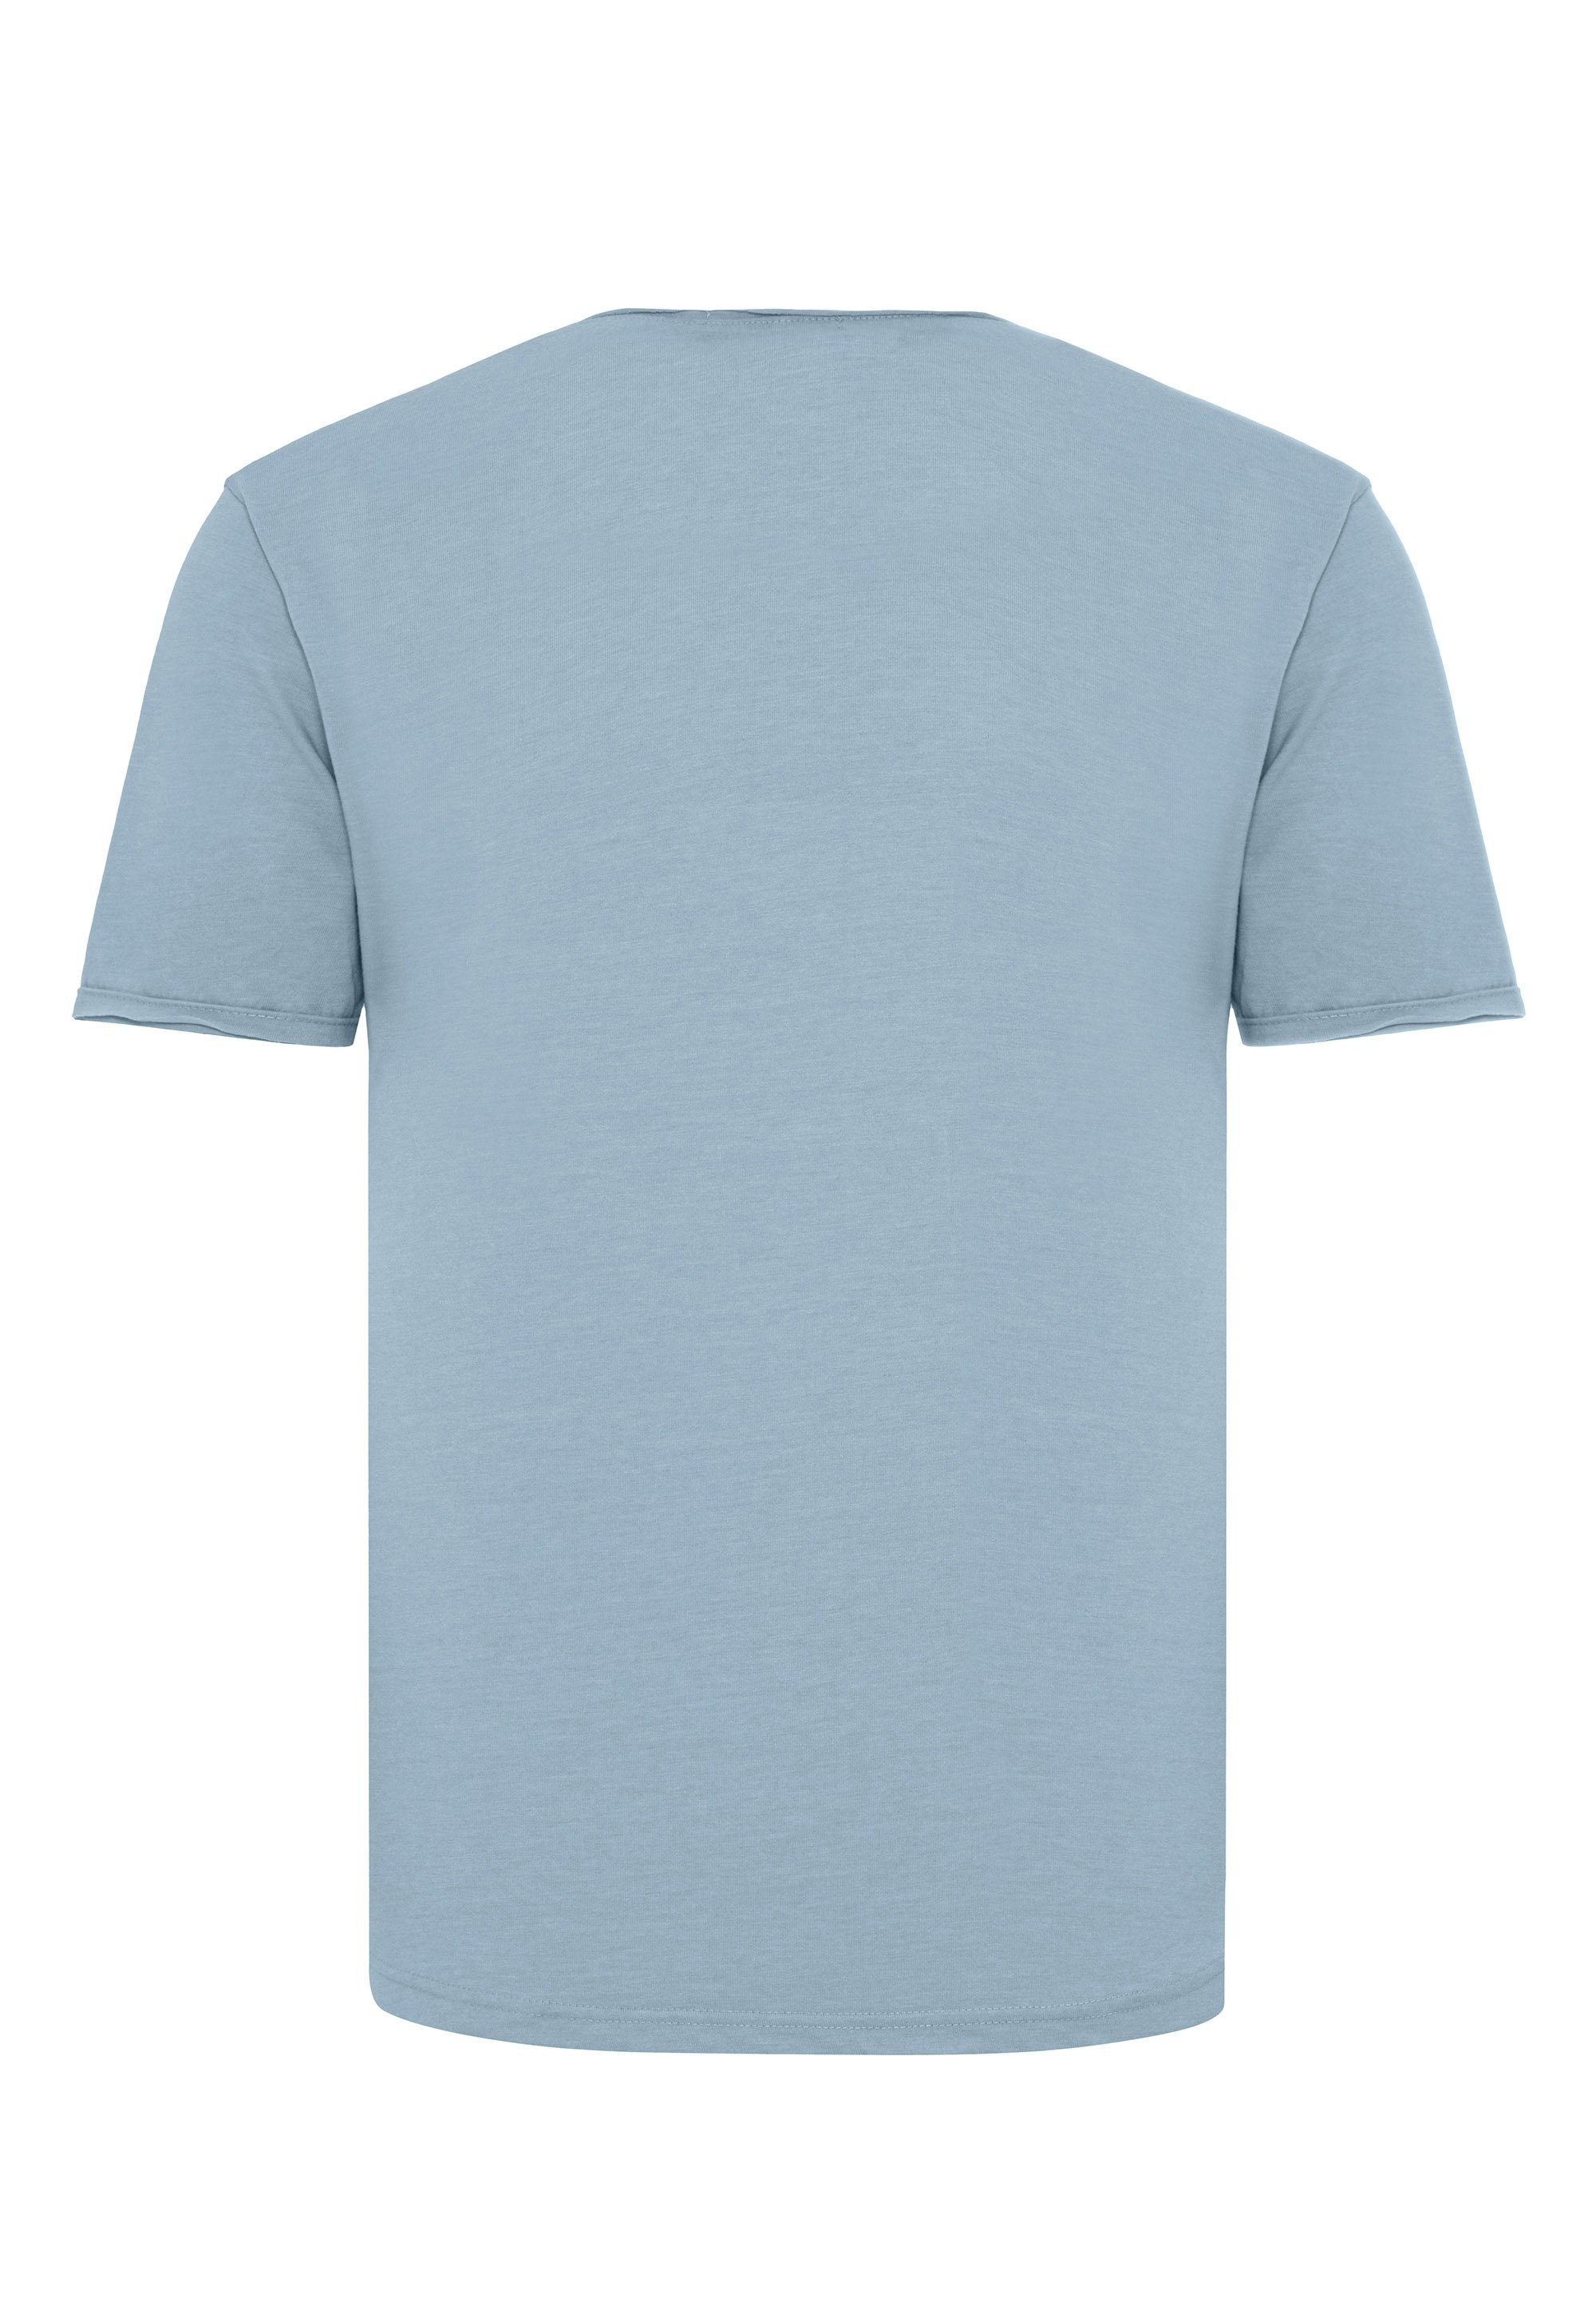 Taunton abgerundeten blau mit T-Shirt RedBridge Saum